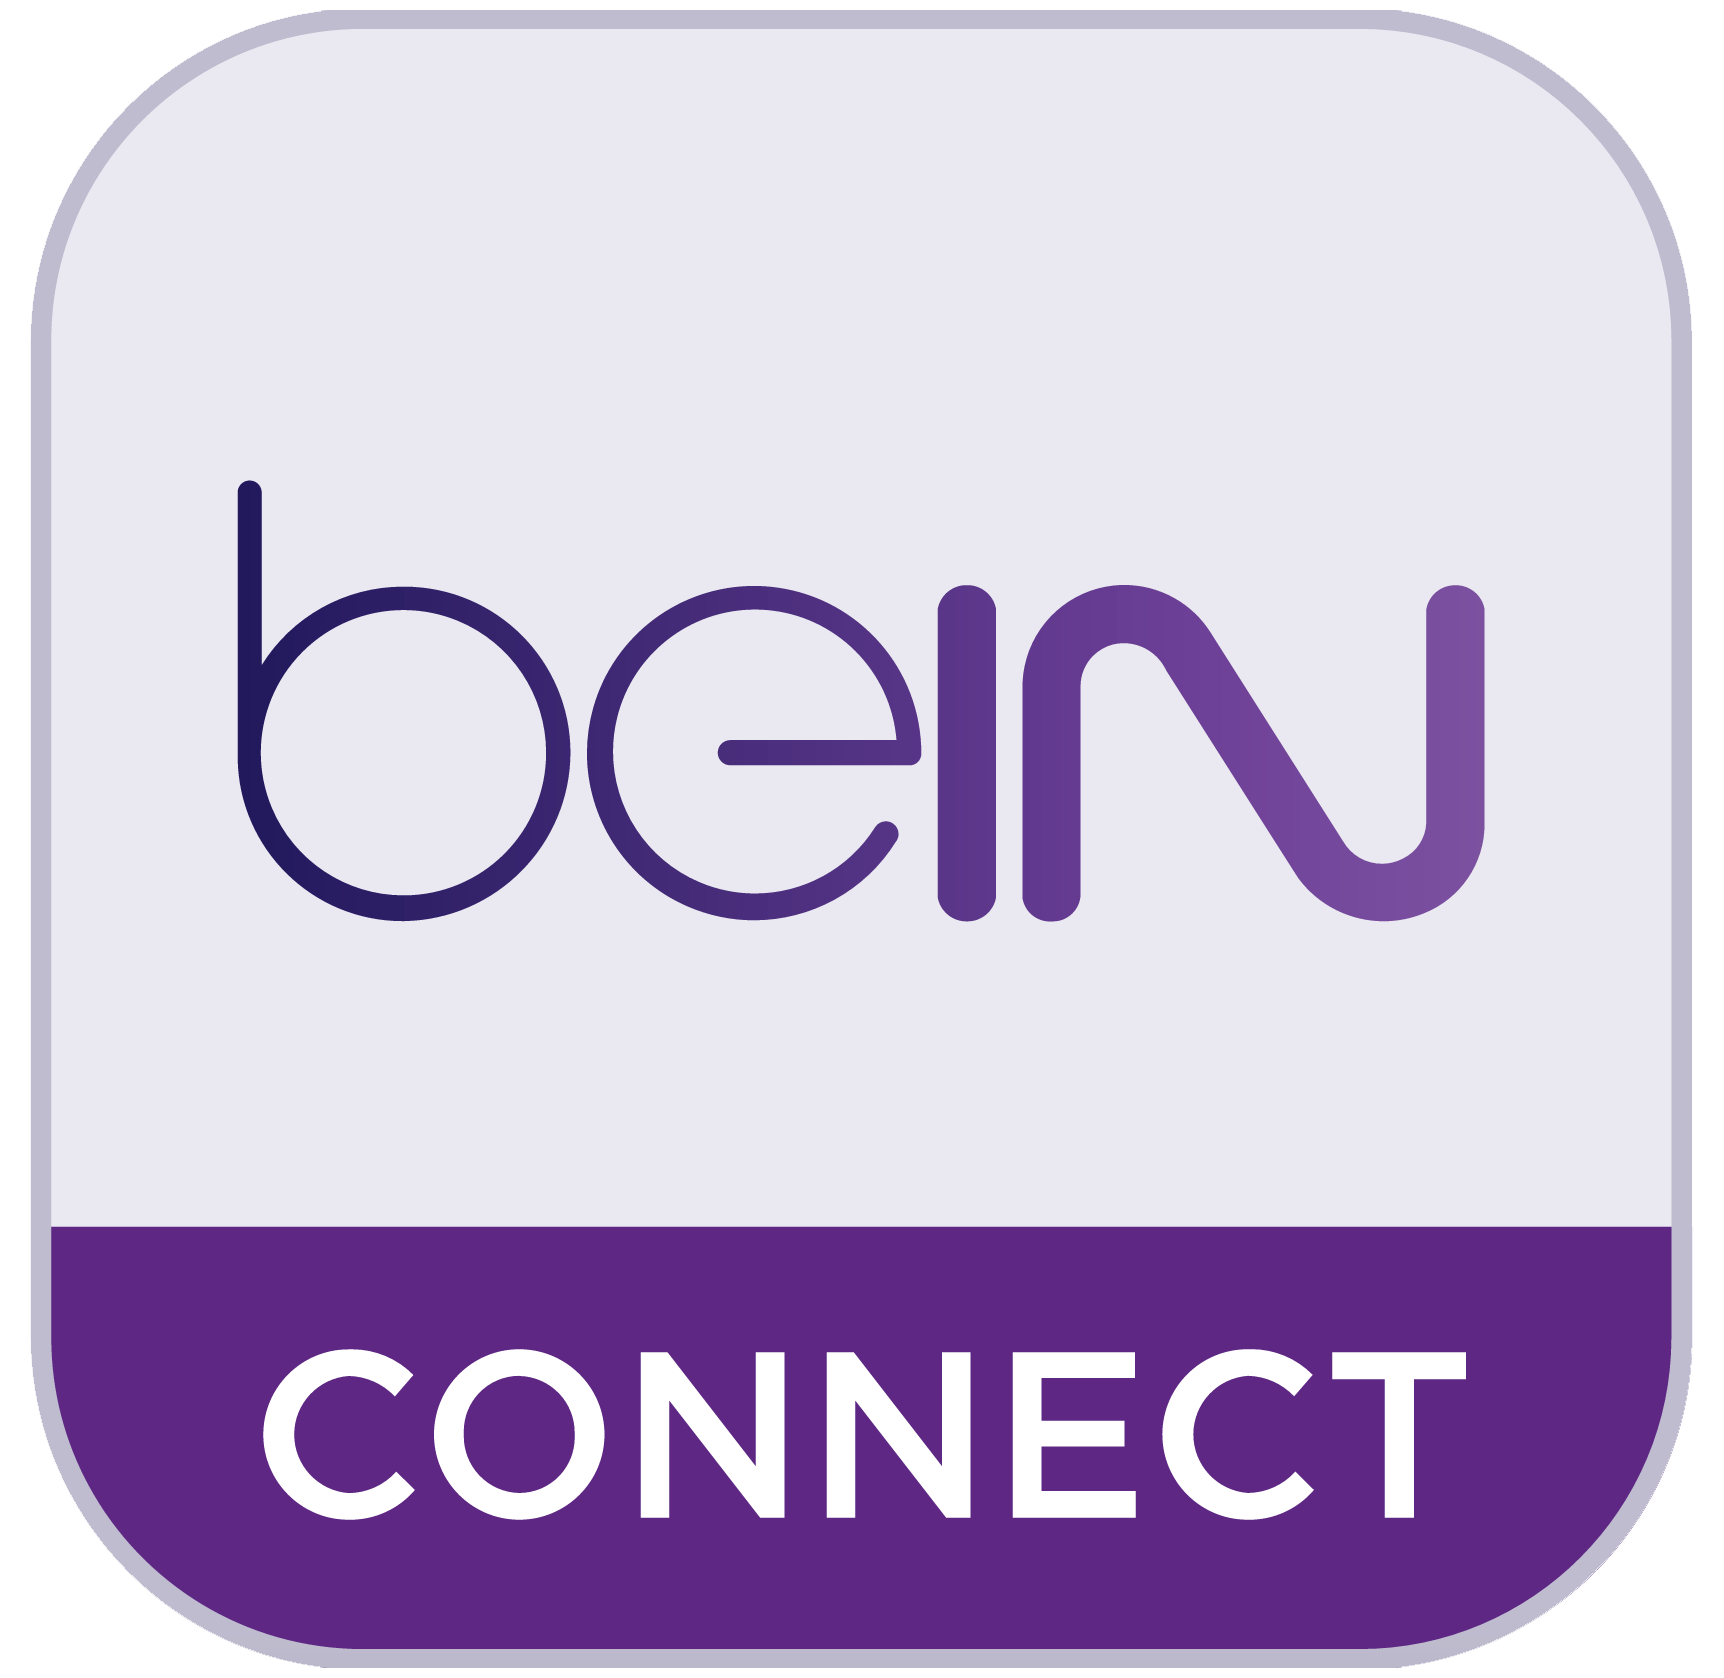 Bein Logo - Bein sport Logos